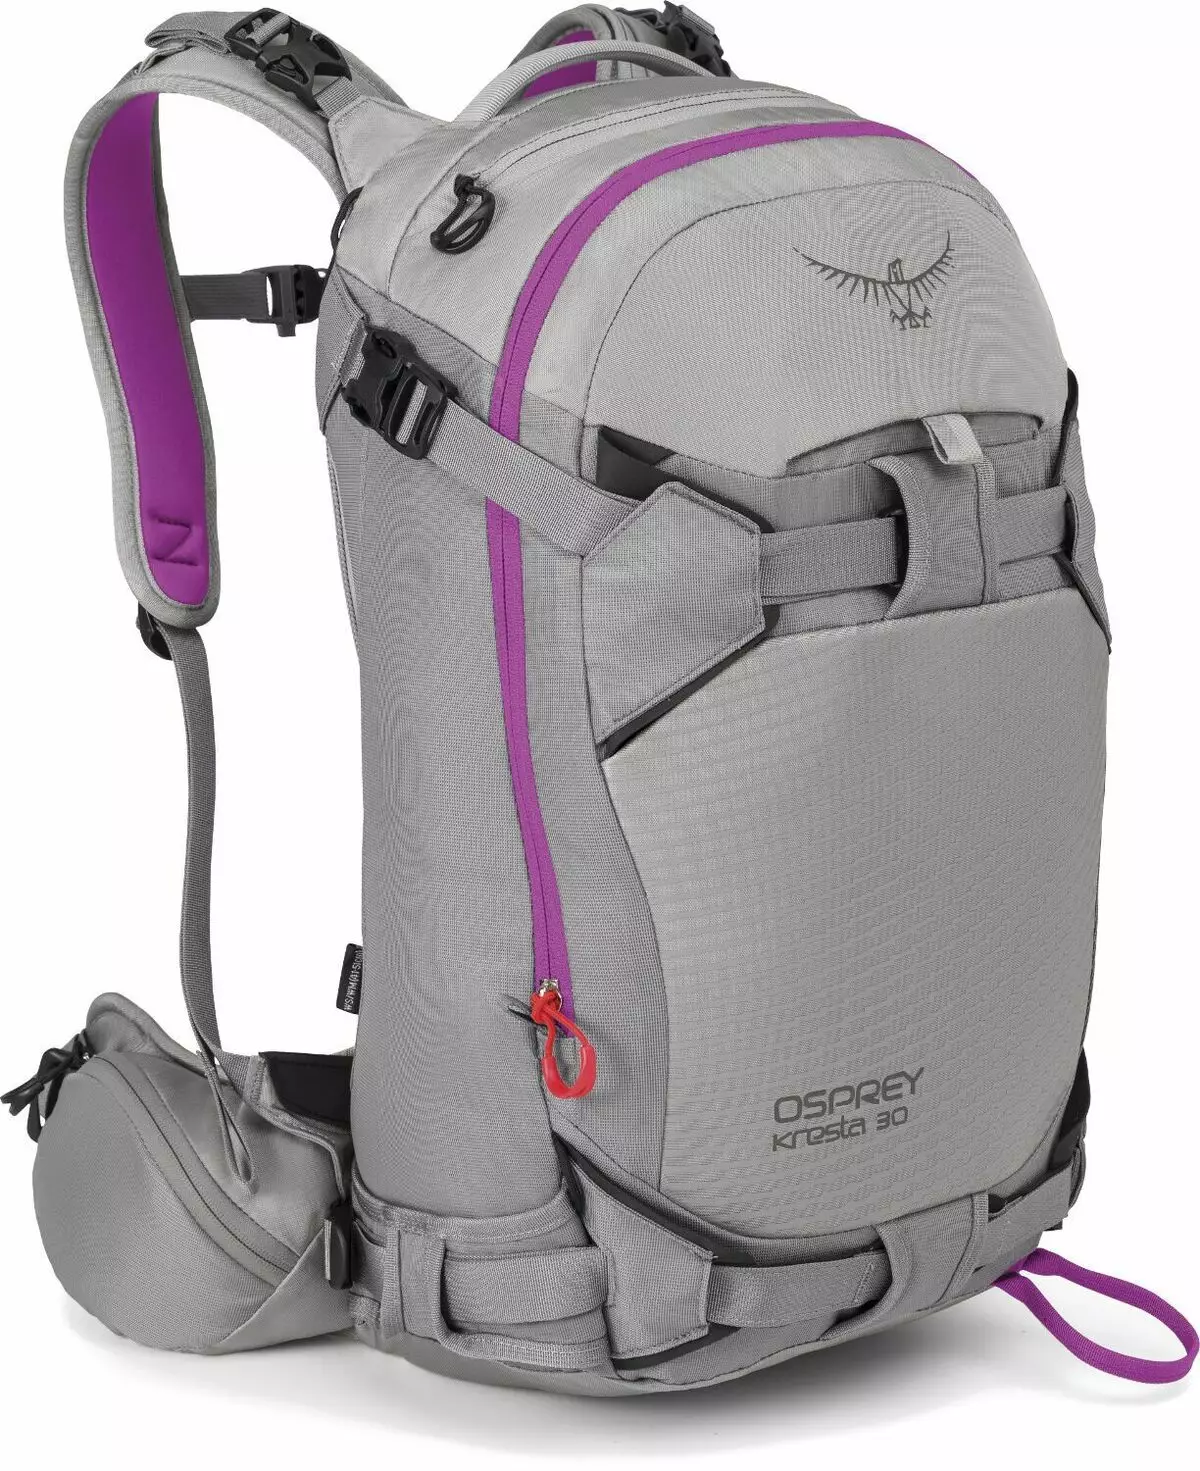 Plecaki Osprey: Urban, Ultralight and System picia, inne modele, rozmiary i lądowanie dla kobiet 15395_20